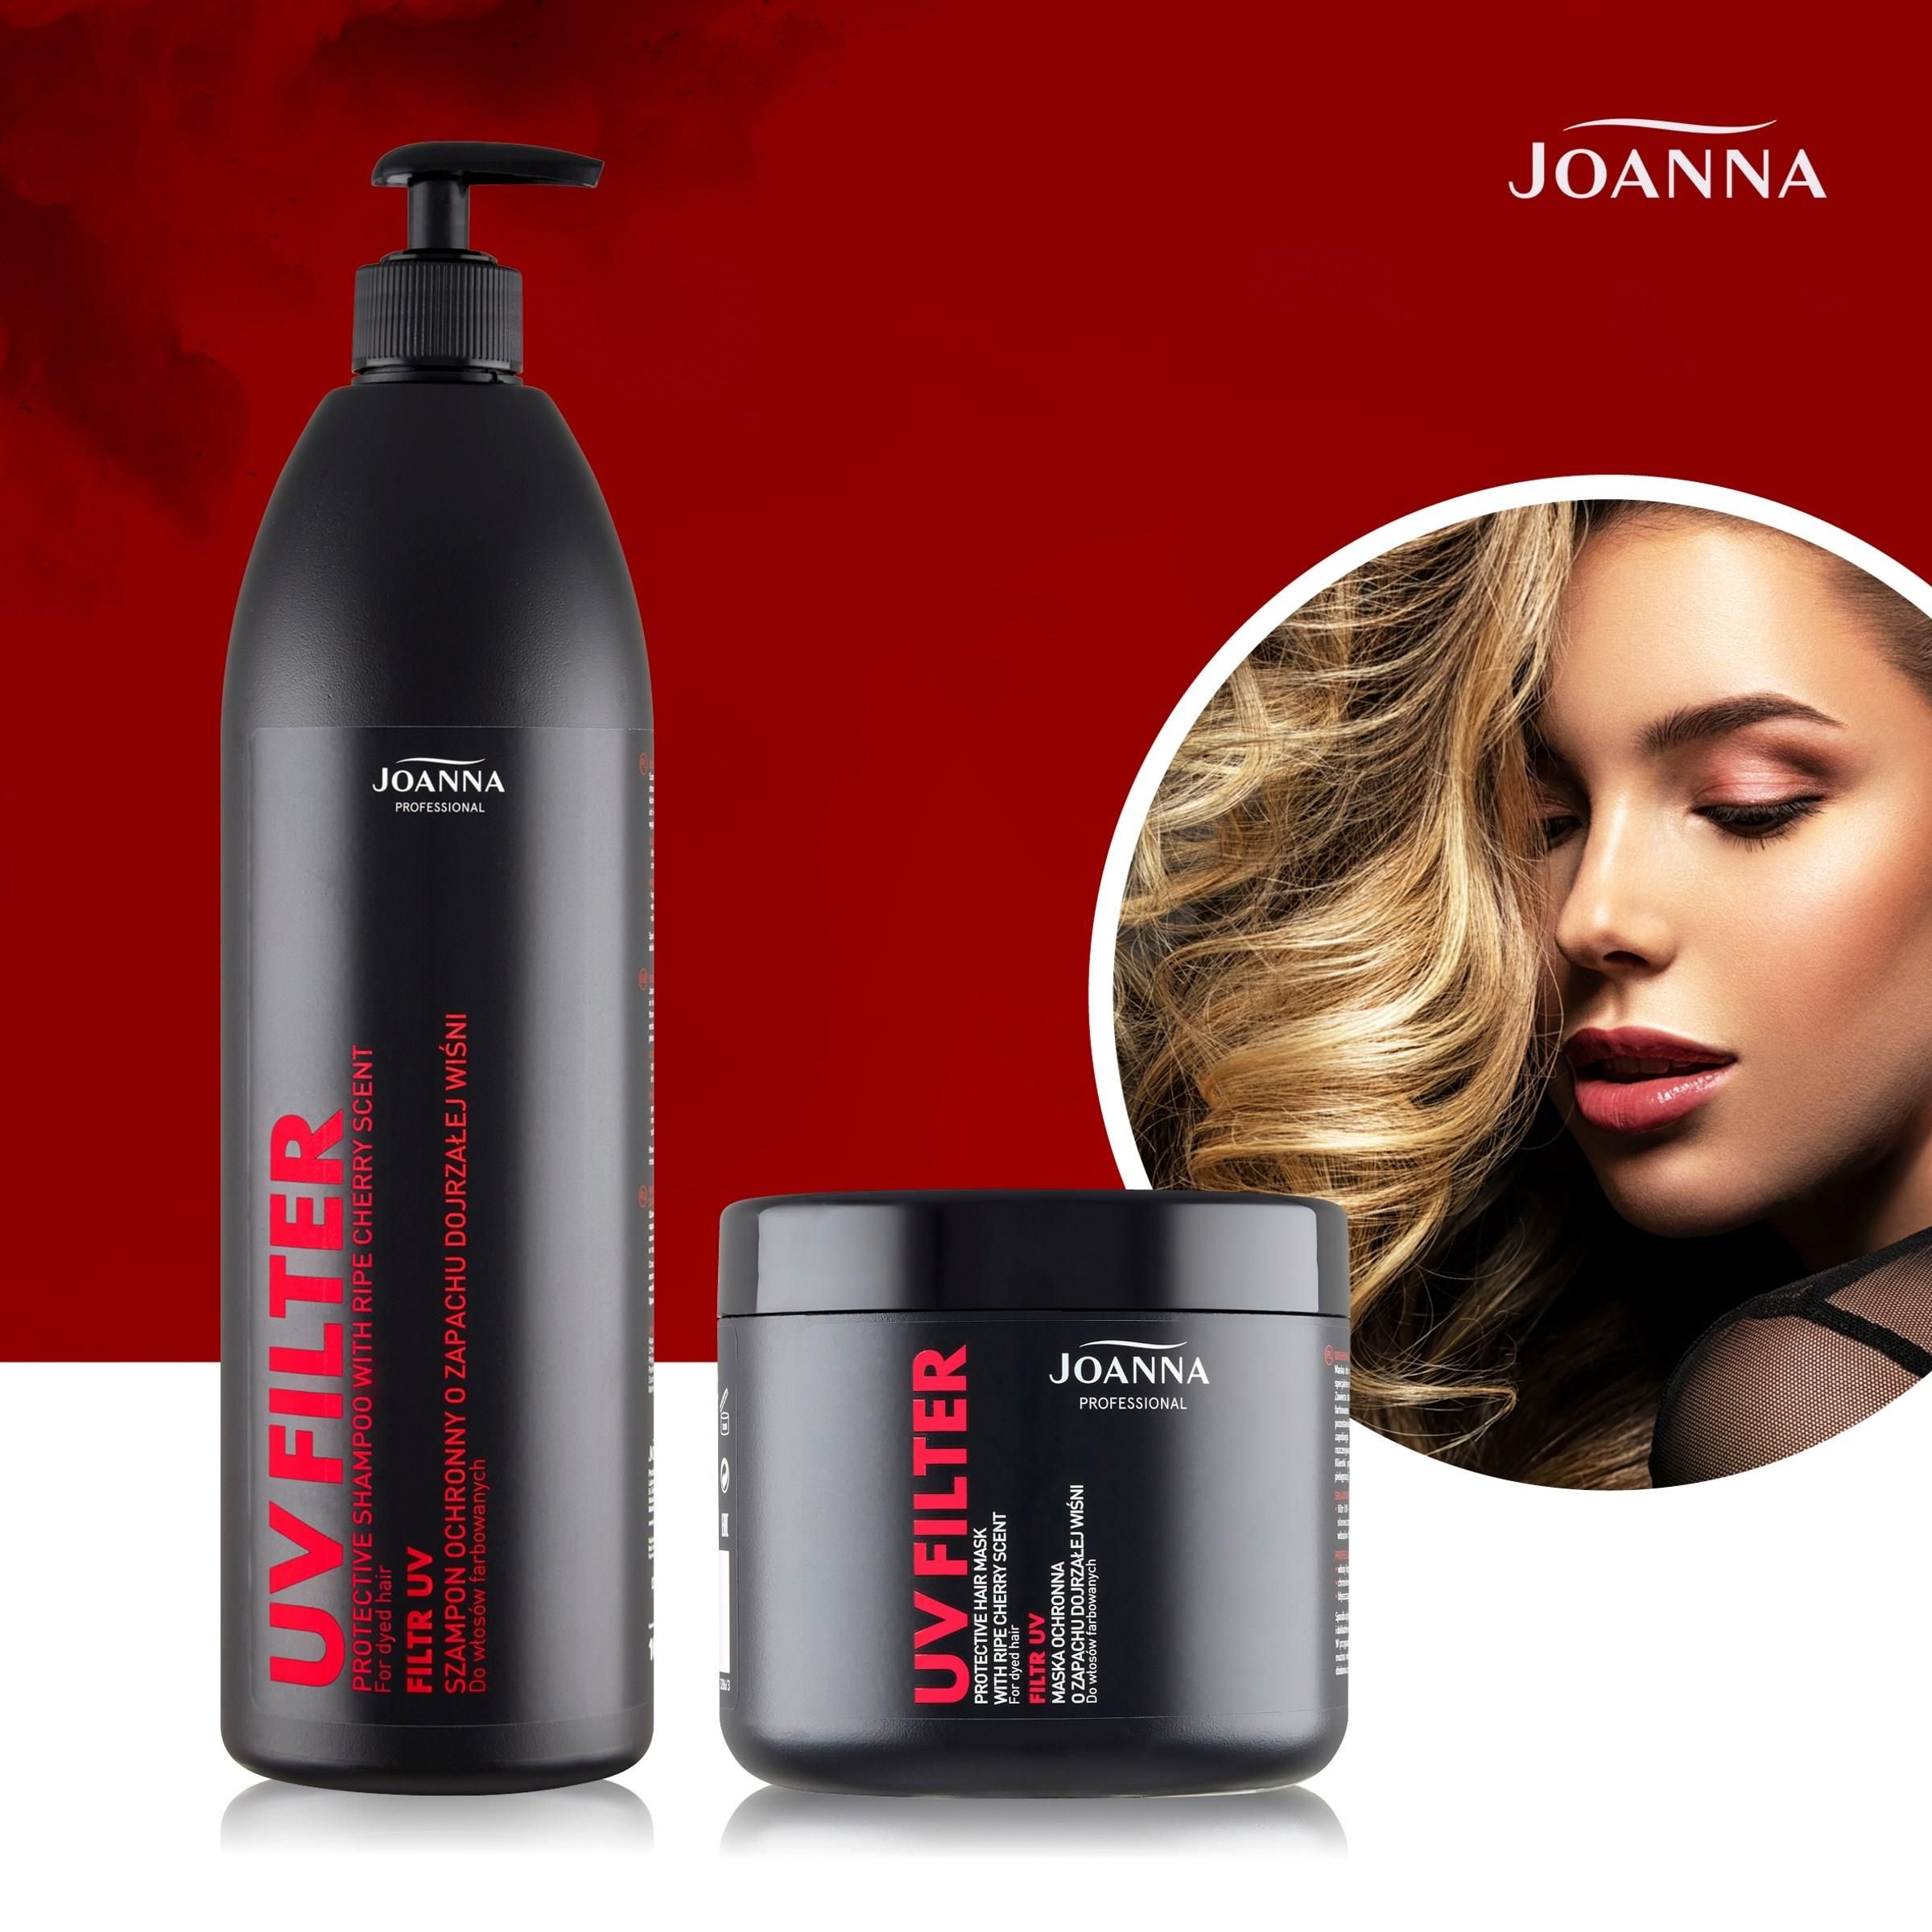 joanna professional szampon do włosów farbowanych 1000ml ceneo